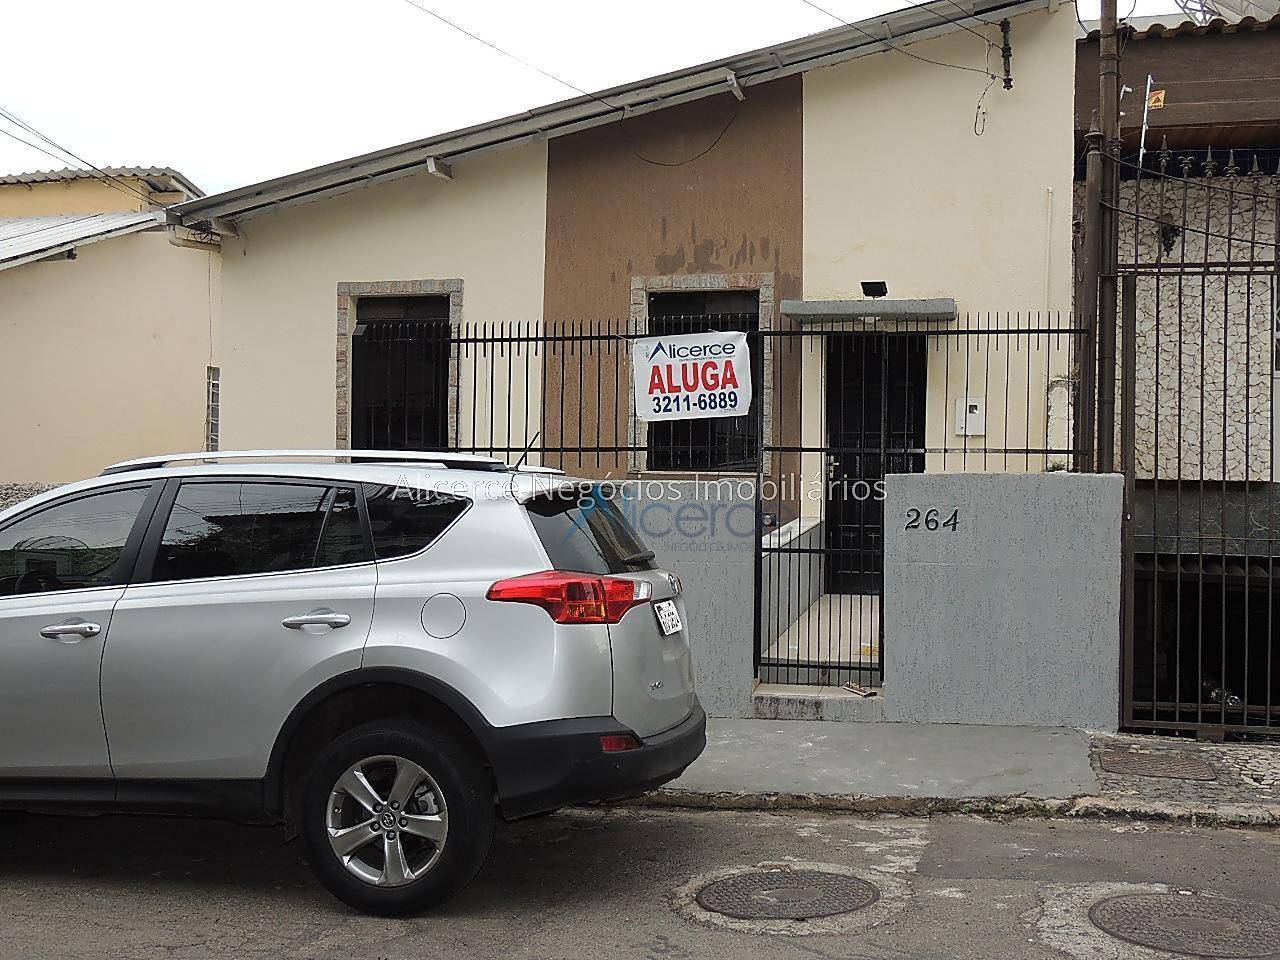 Casa com 2 dormitórios à venda, 75 m² por R$ 220.000,00 - Bom Pastor - Juiz de Fora/MG